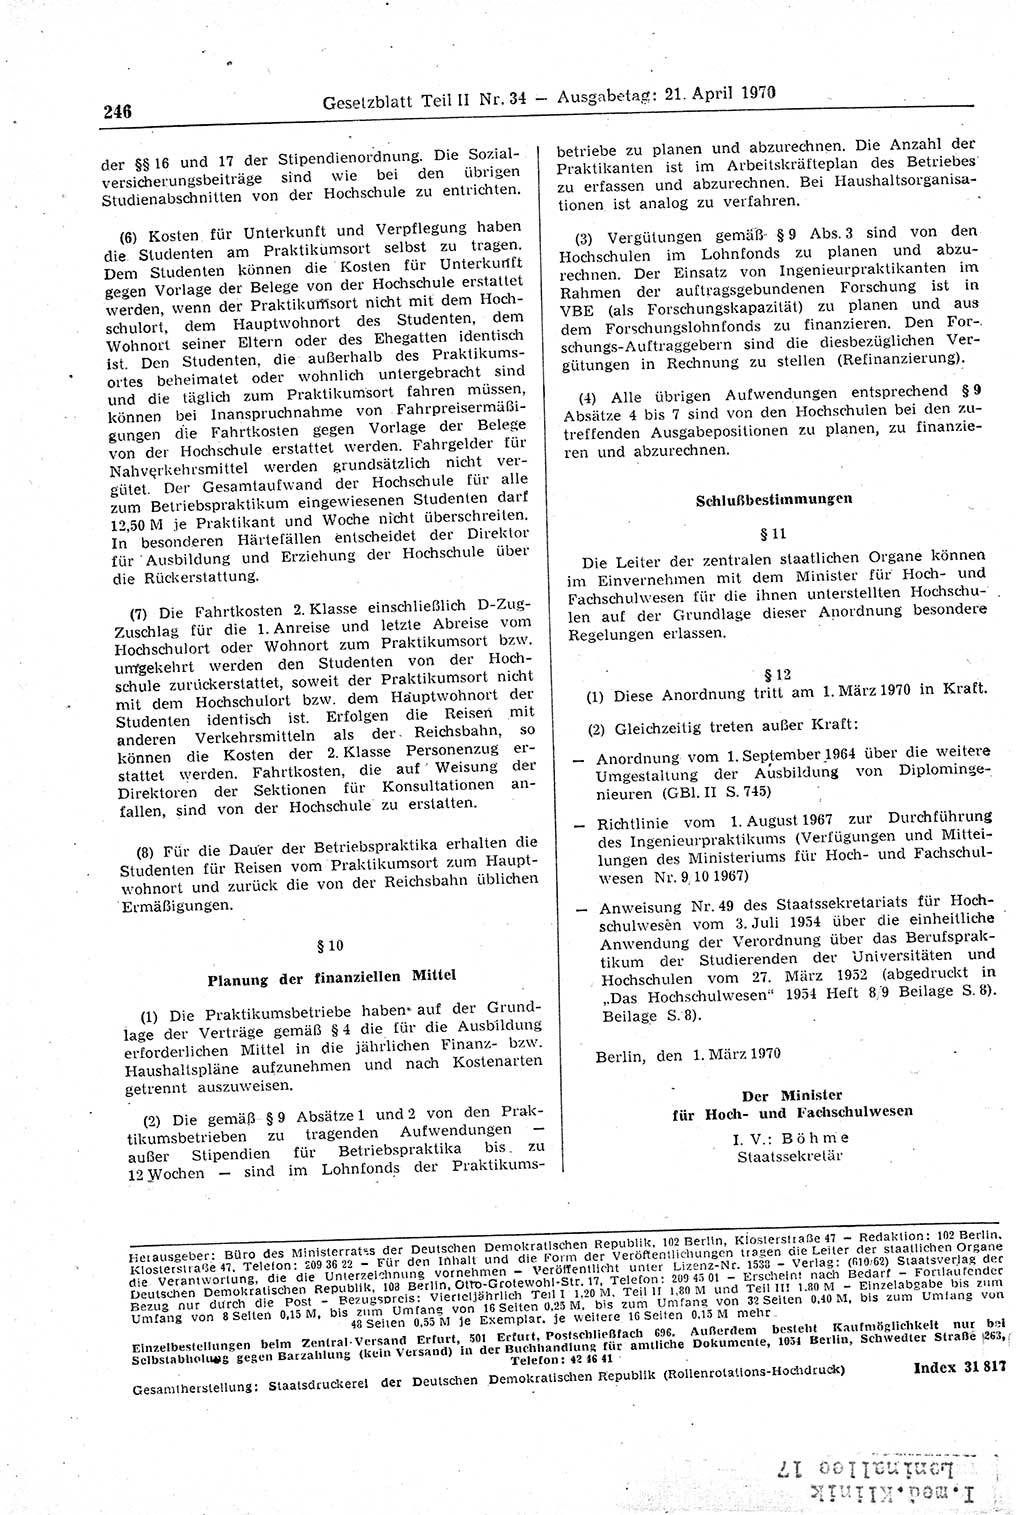 Gesetzblatt (GBl.) der Deutschen Demokratischen Republik (DDR) Teil ⅠⅠ 1970, Seite 246 (GBl. DDR ⅠⅠ 1970, S. 246)